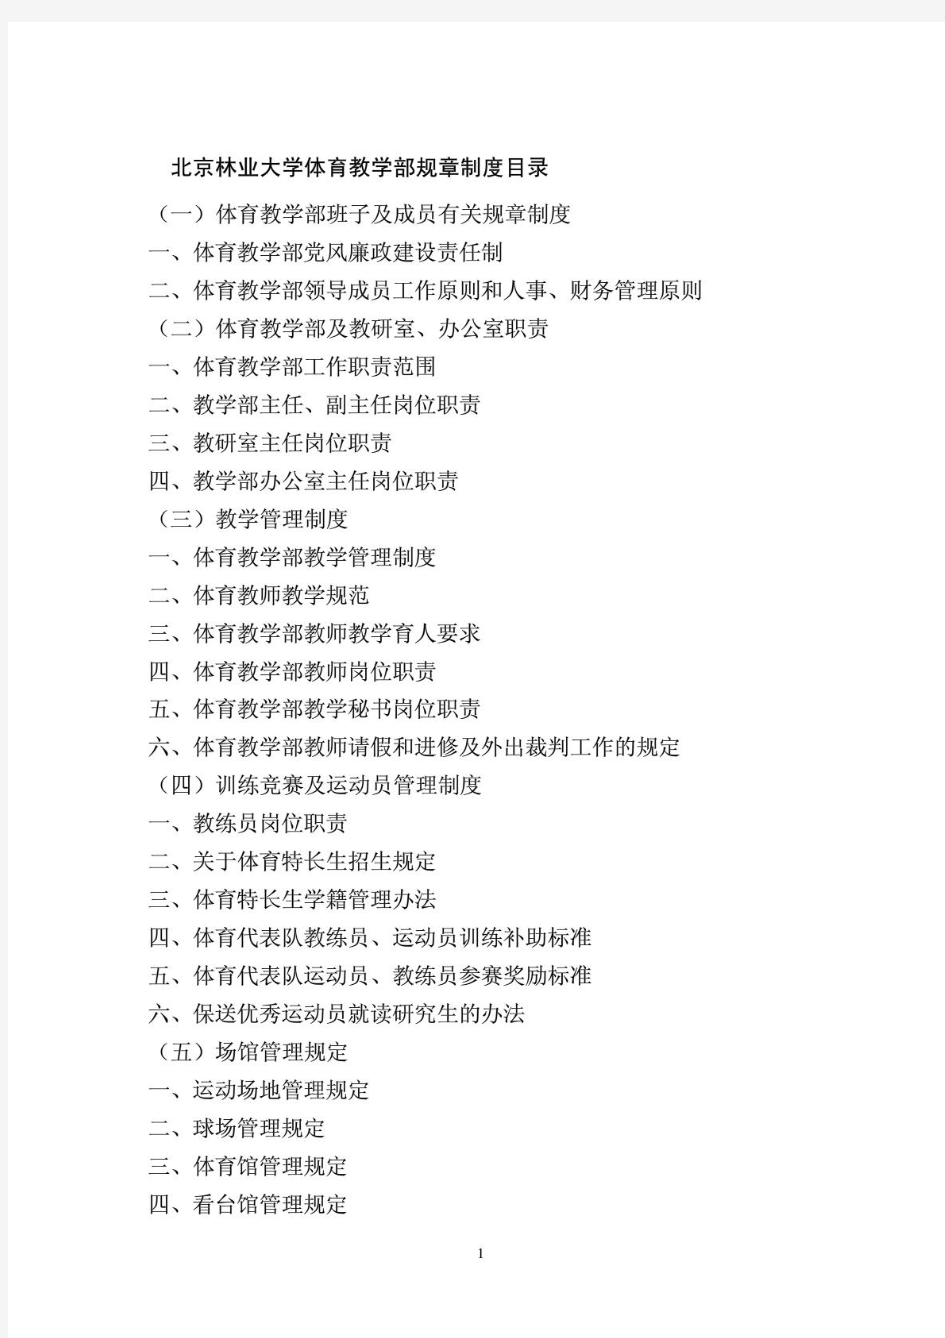 北京林业大学体育教学部规章制度目录